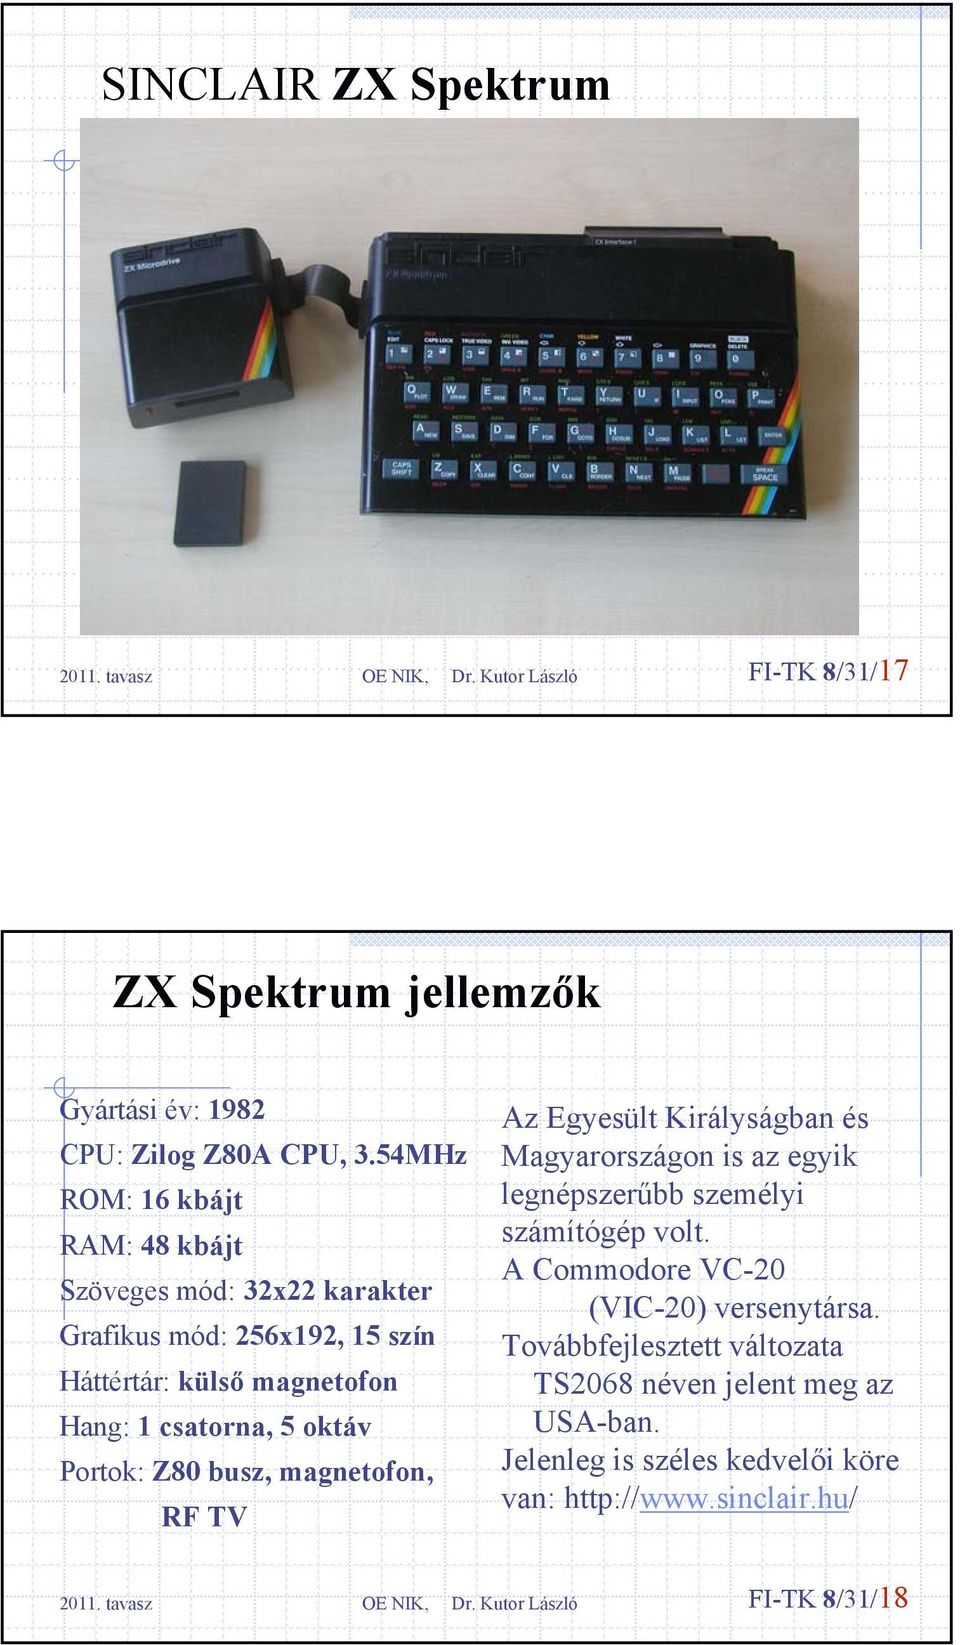 5 oktáv Portok: Z80 busz, magnetofon, RF TV Az Egyesült Királyságban és Magyarországon is az egyik legnépszerűbb személyi számítógép volt.